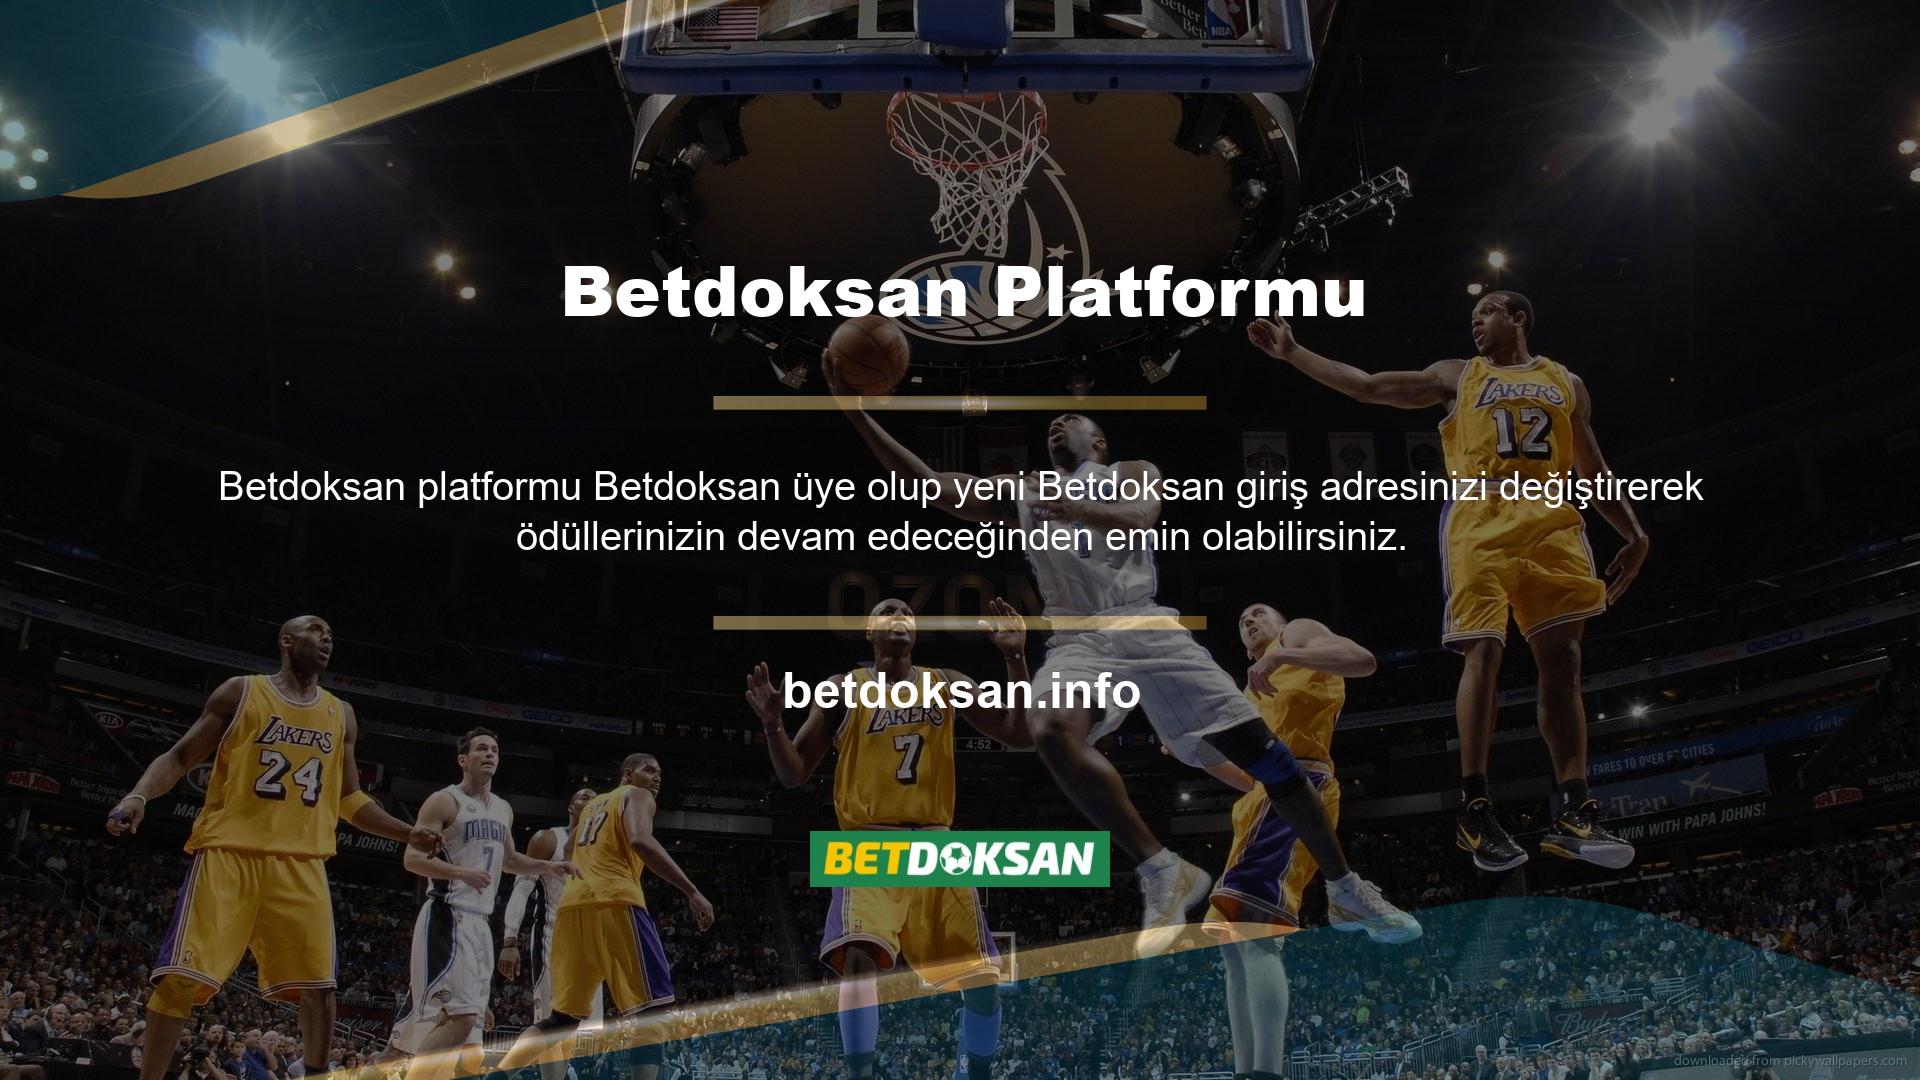 Aynı zamanda bahis oyun platformu ve bahis oyun platformunda Betdoksan sitesinin bonus fırsatlarından yararlanabilirsiniz